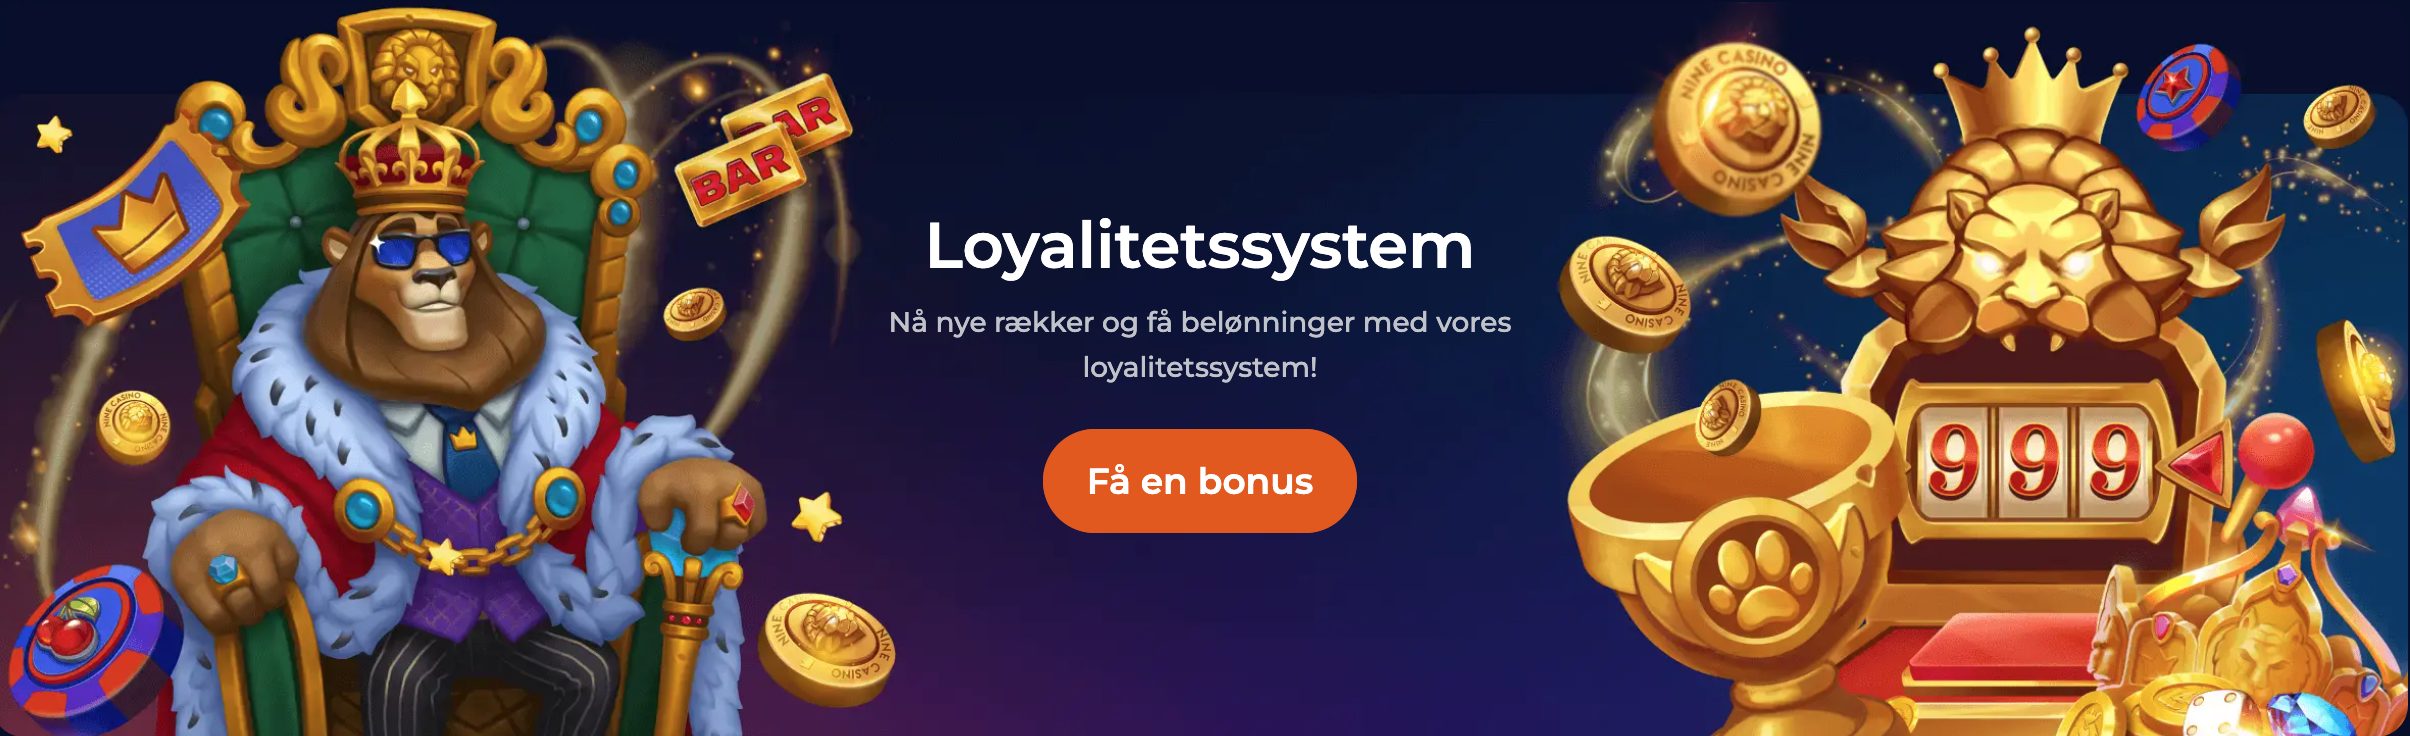 Loyalitetssystem Nine Casino